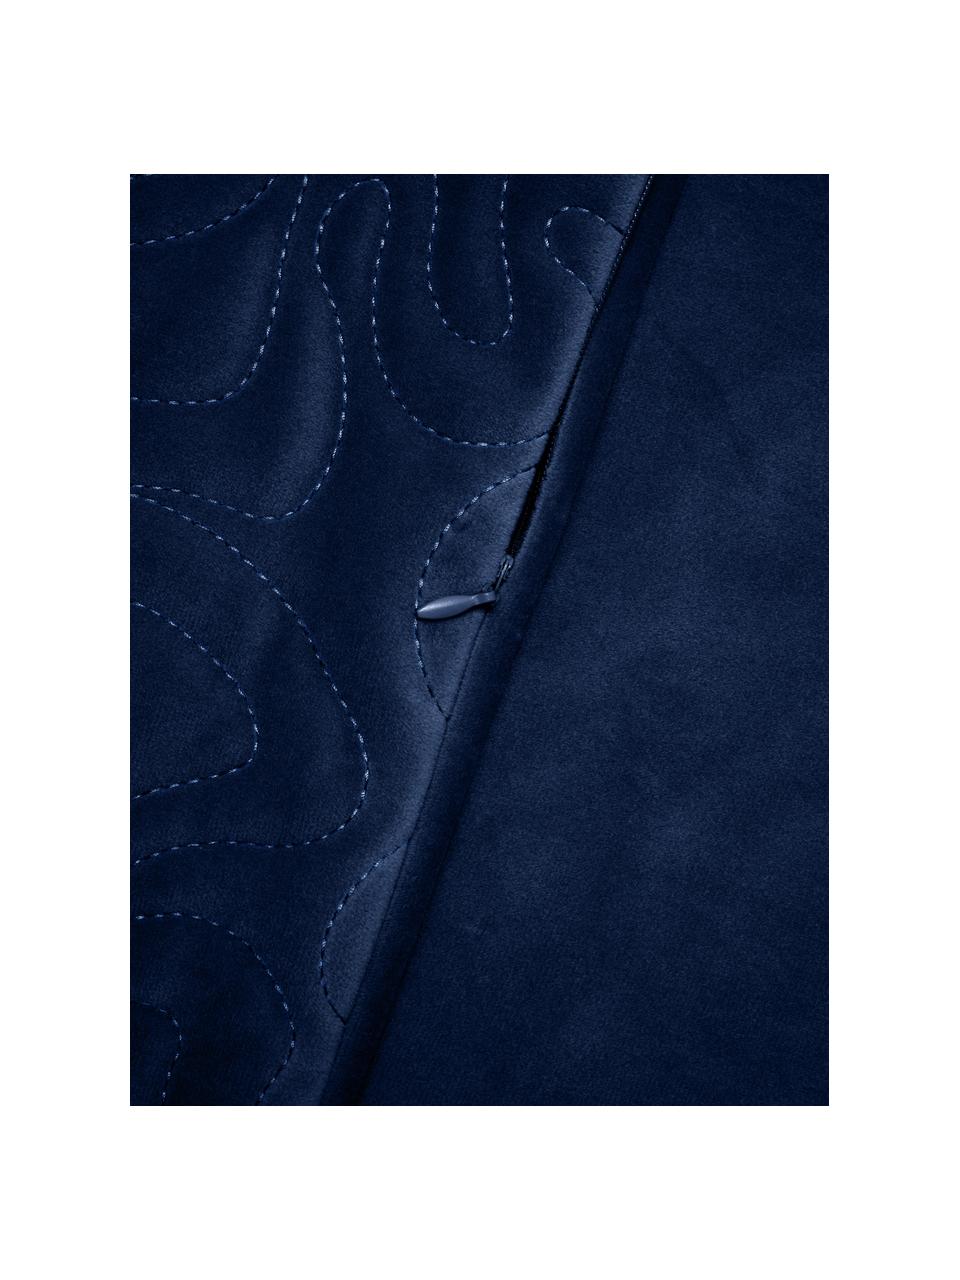 Federa arredo in velluto blu scuro con abbellimento decorativo Hera, 100% poliestere riciclato, Velluto blu scuro, Larg. 45 x Lung. 45 cm